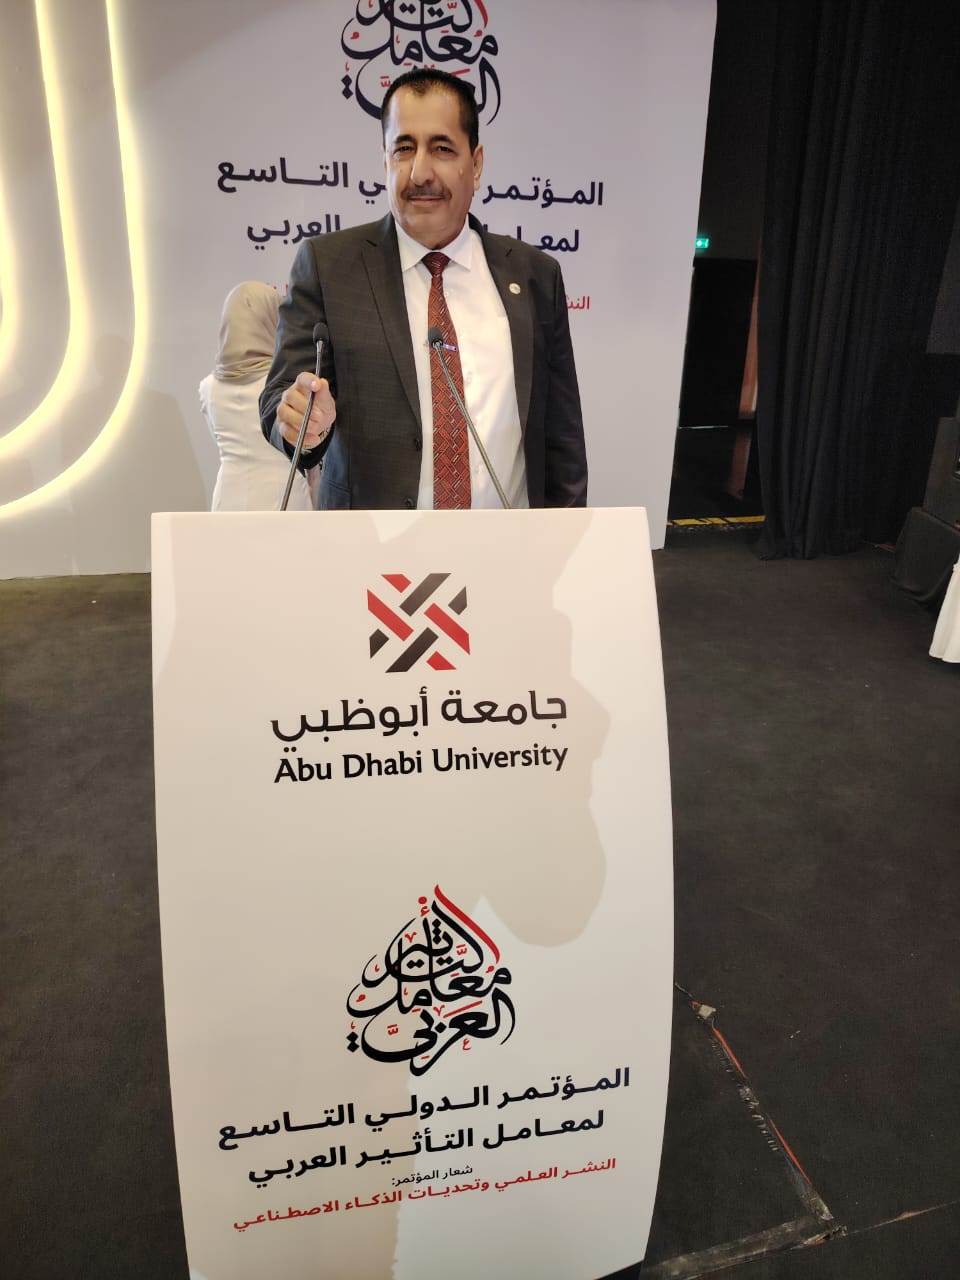 الدكتور شكري المراشدة الشخصية البارزة للعام ٢٠٢٤ في مؤتمر معامل التأثير العربي التاسع في أبو ظبي